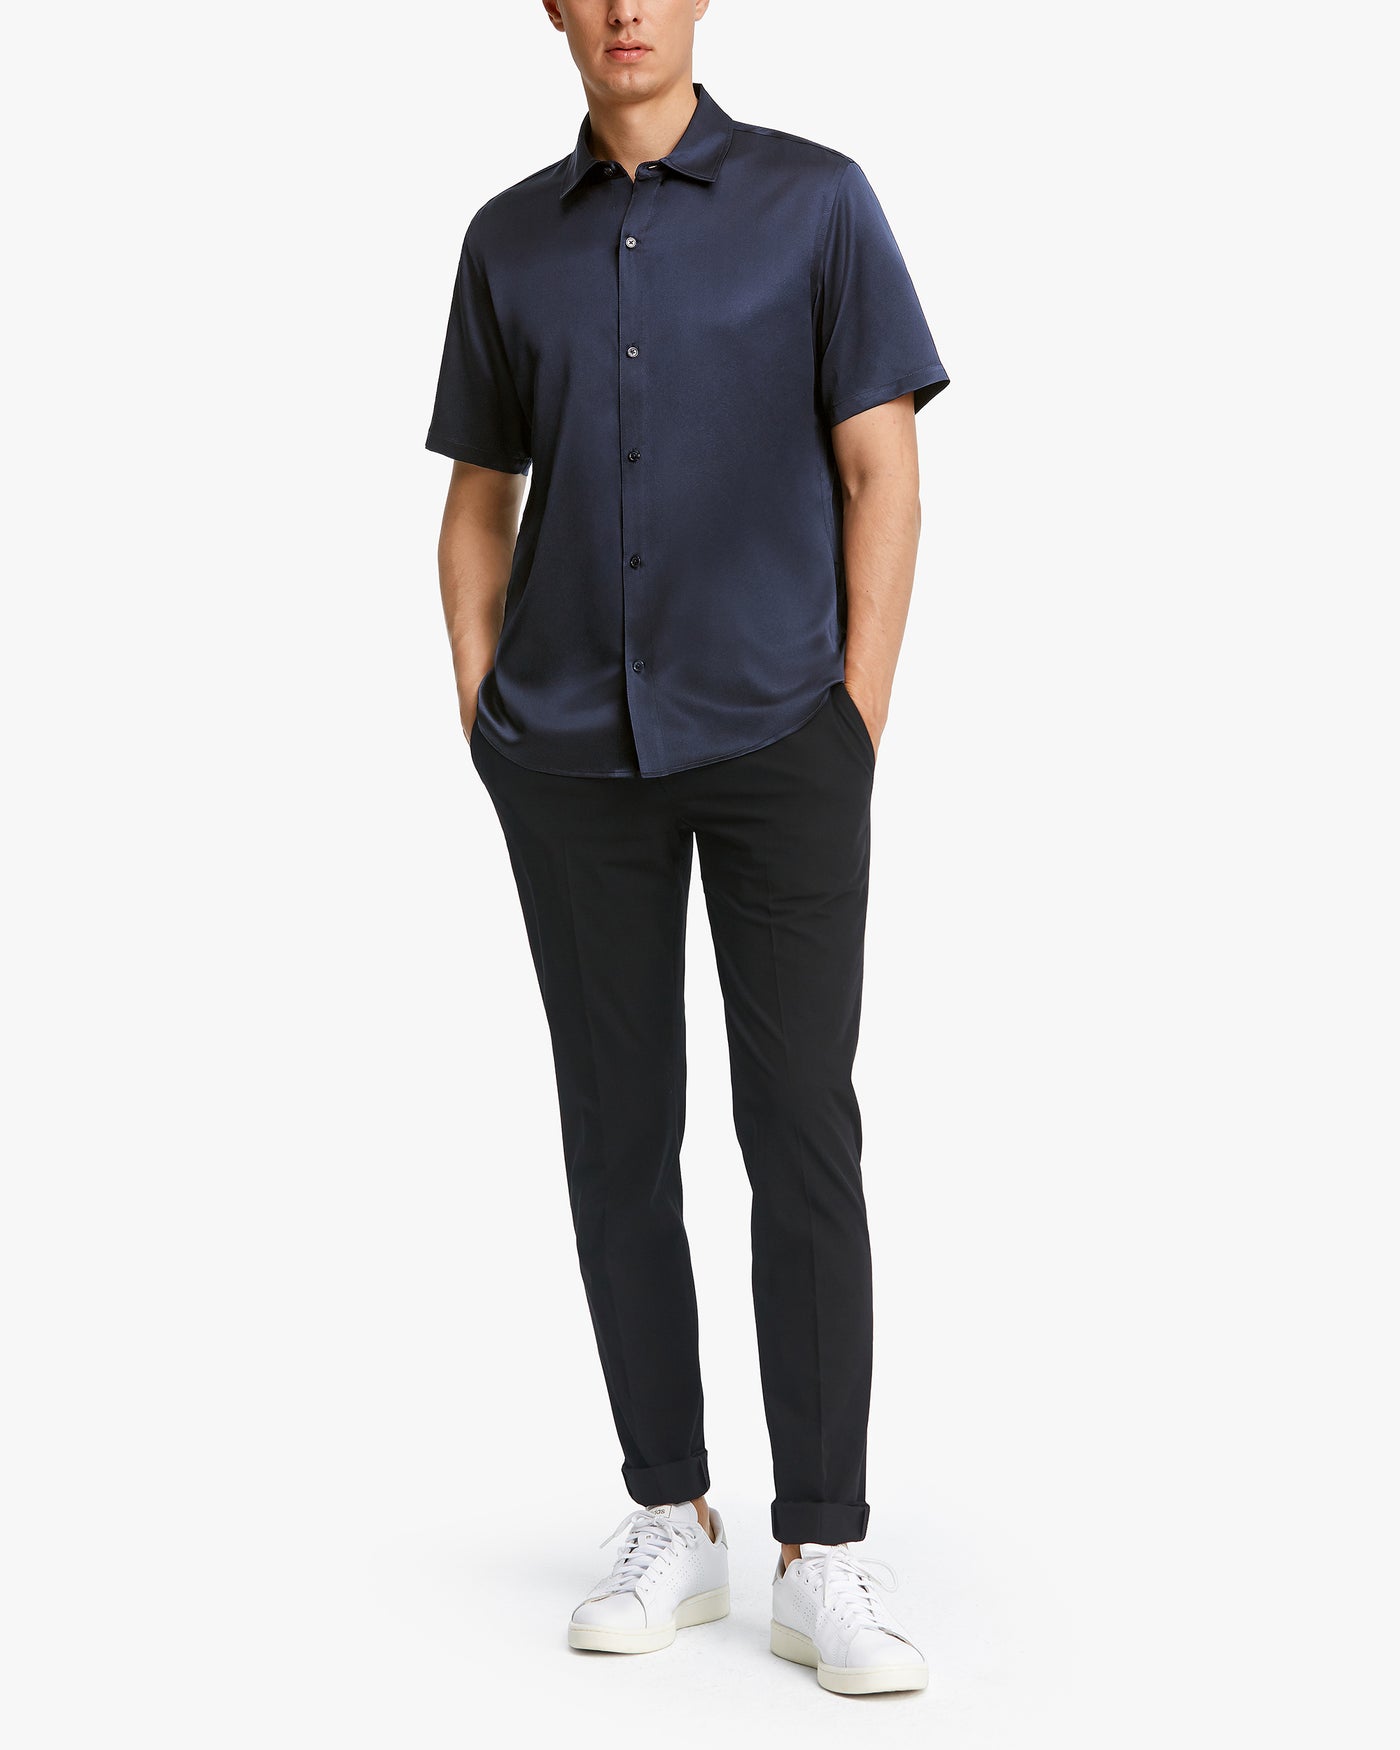 Luxury Short-Sleeved Silk Shirt For Men